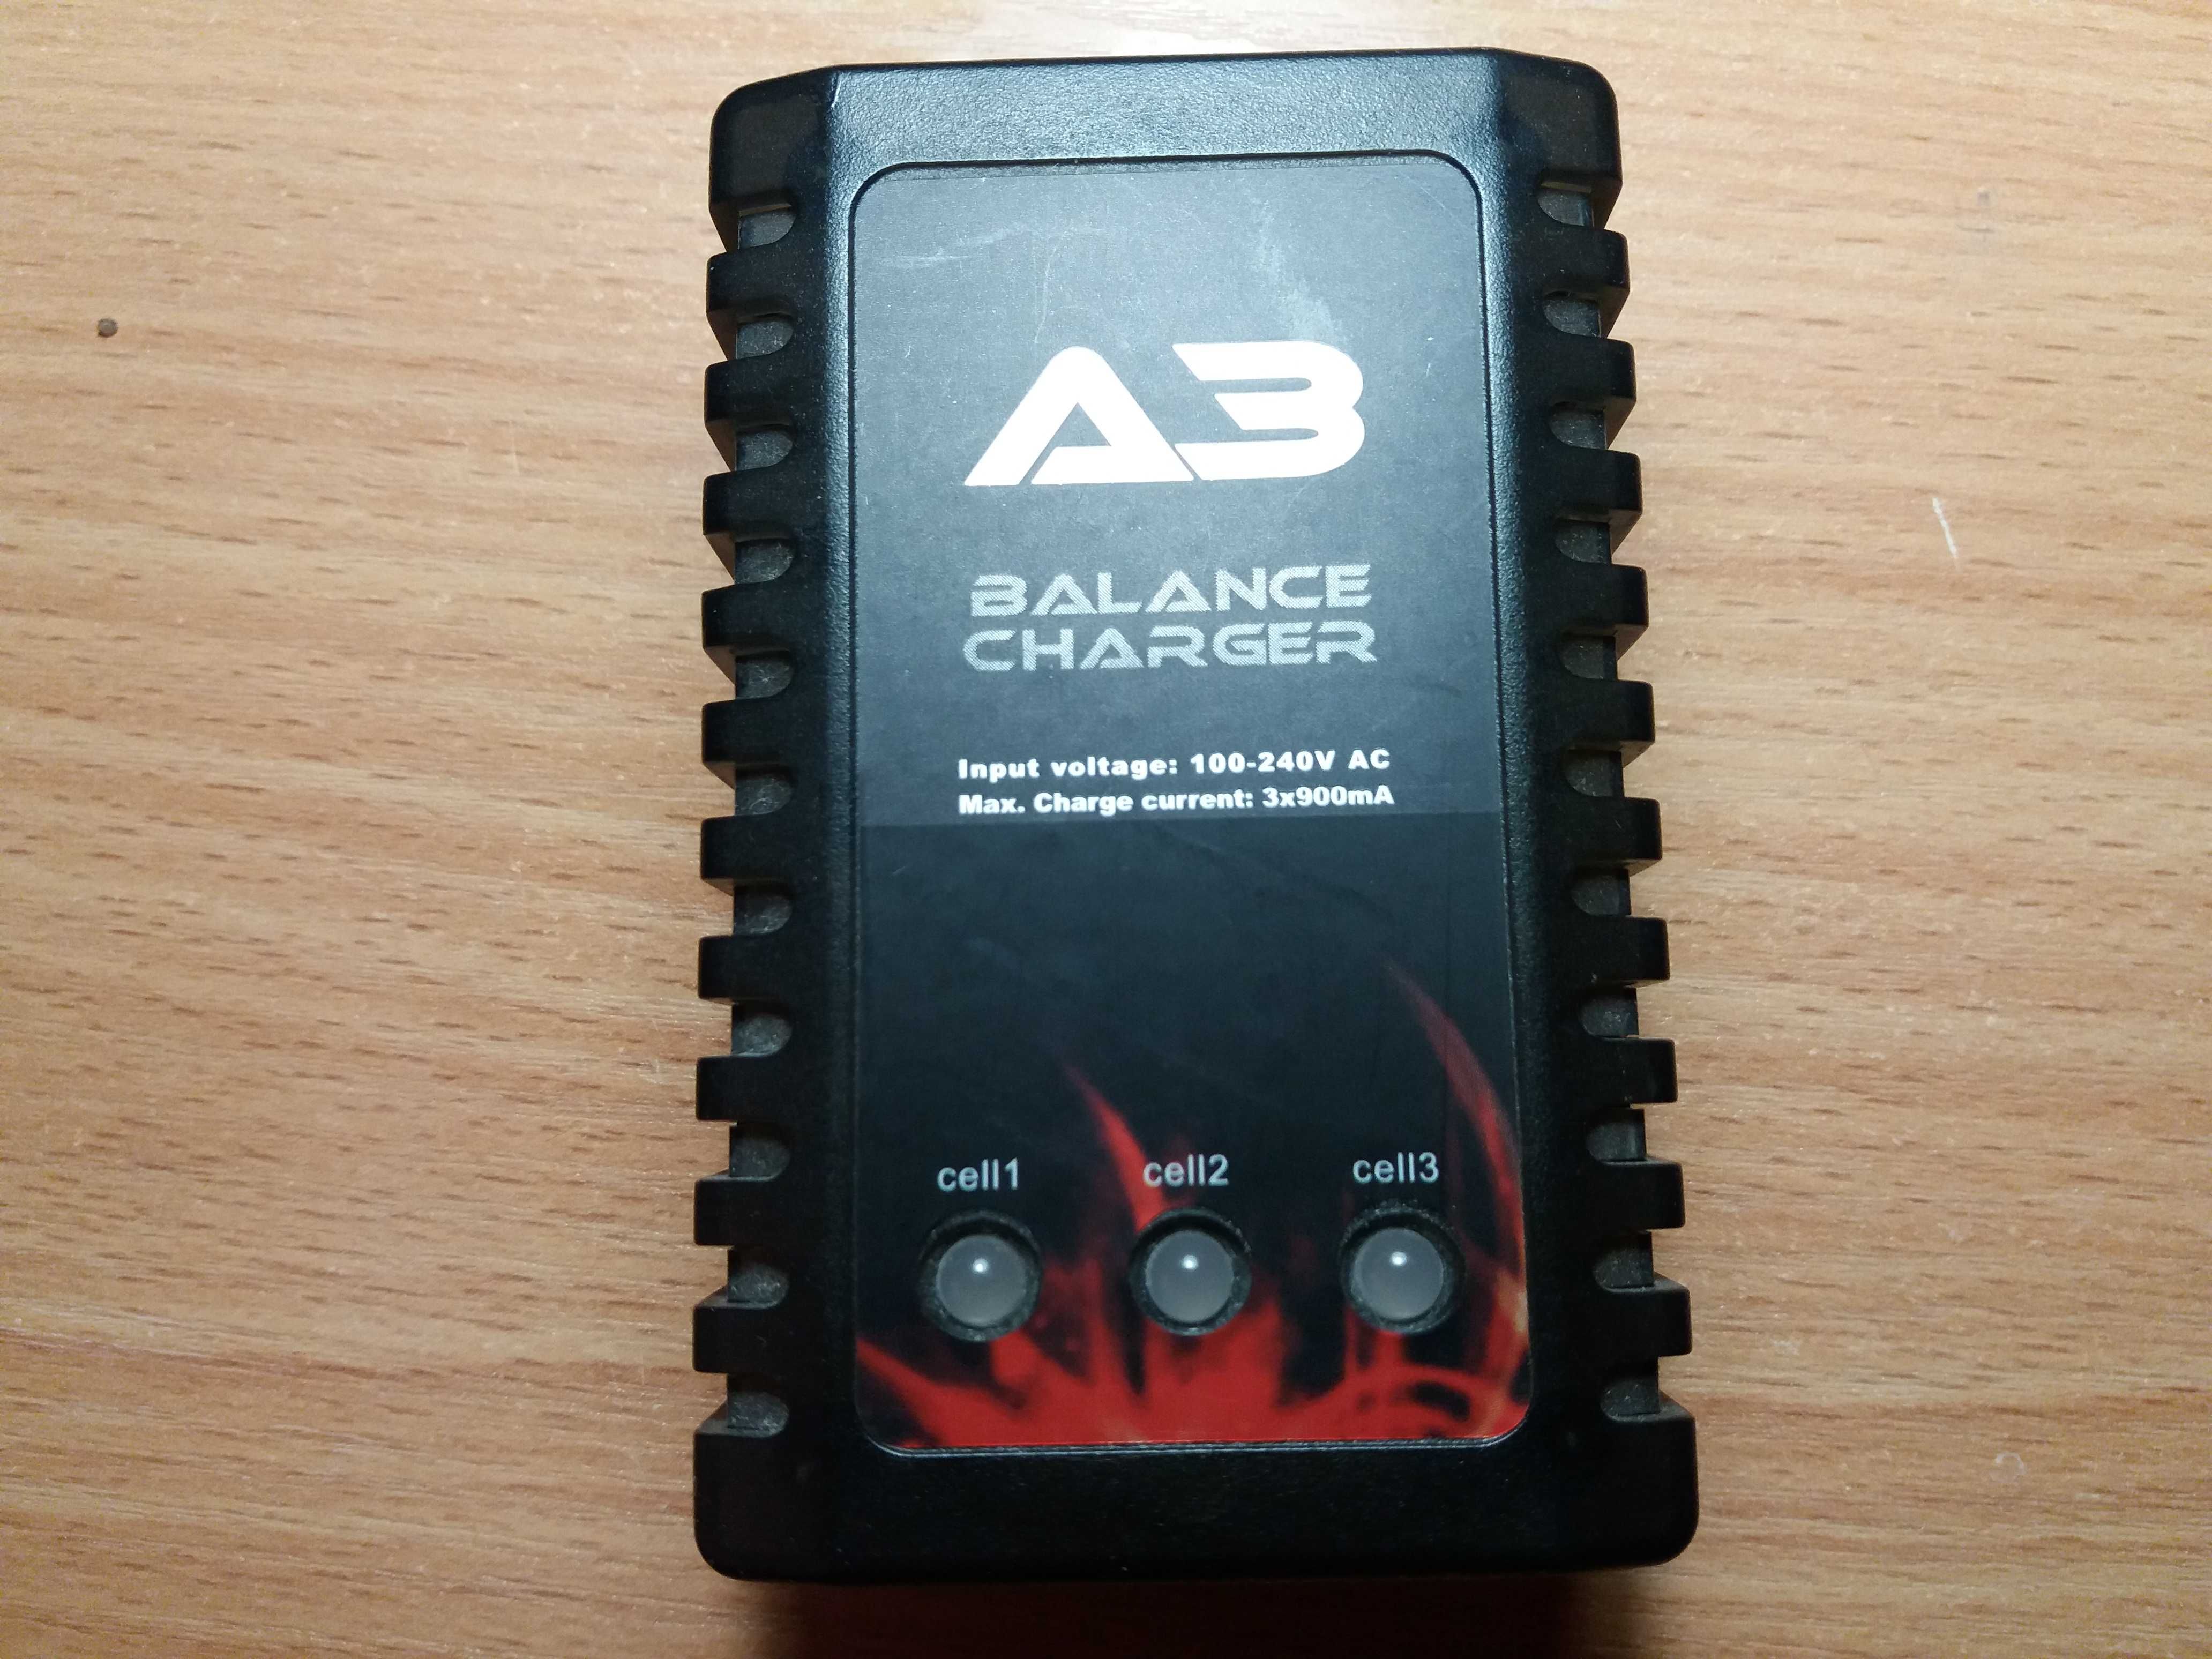 A3 Balance Charger Зарядное устройство с балансировкой для 2S, 3S LiPo